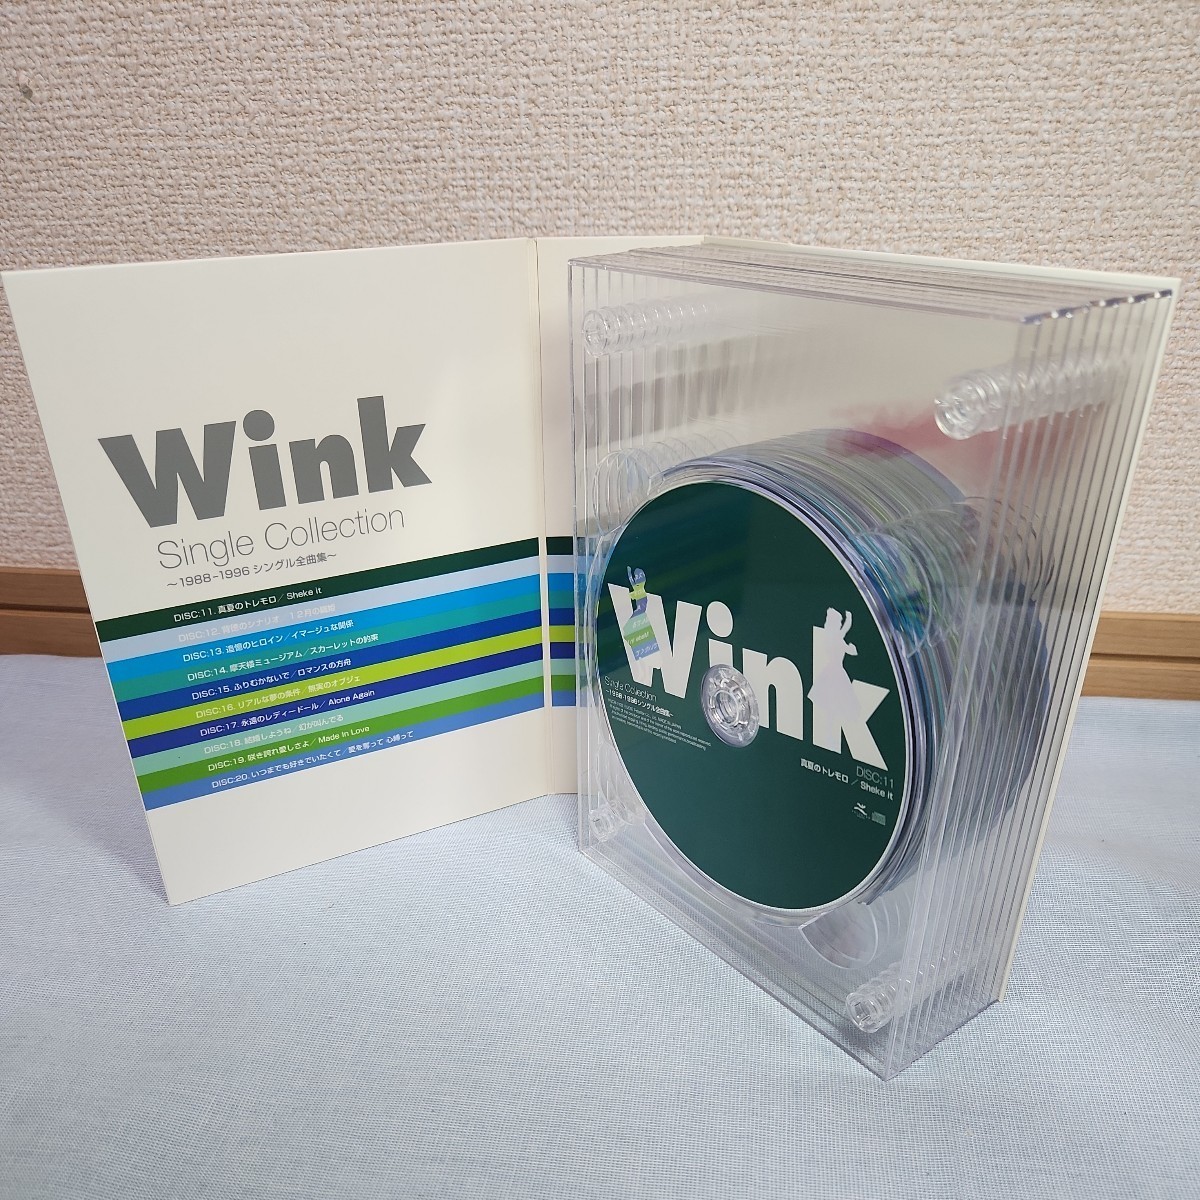 光1) Wink CD Single Collection シングル コレクション 1988-1996 シングル全曲集 box ボックス ウィンク _画像6